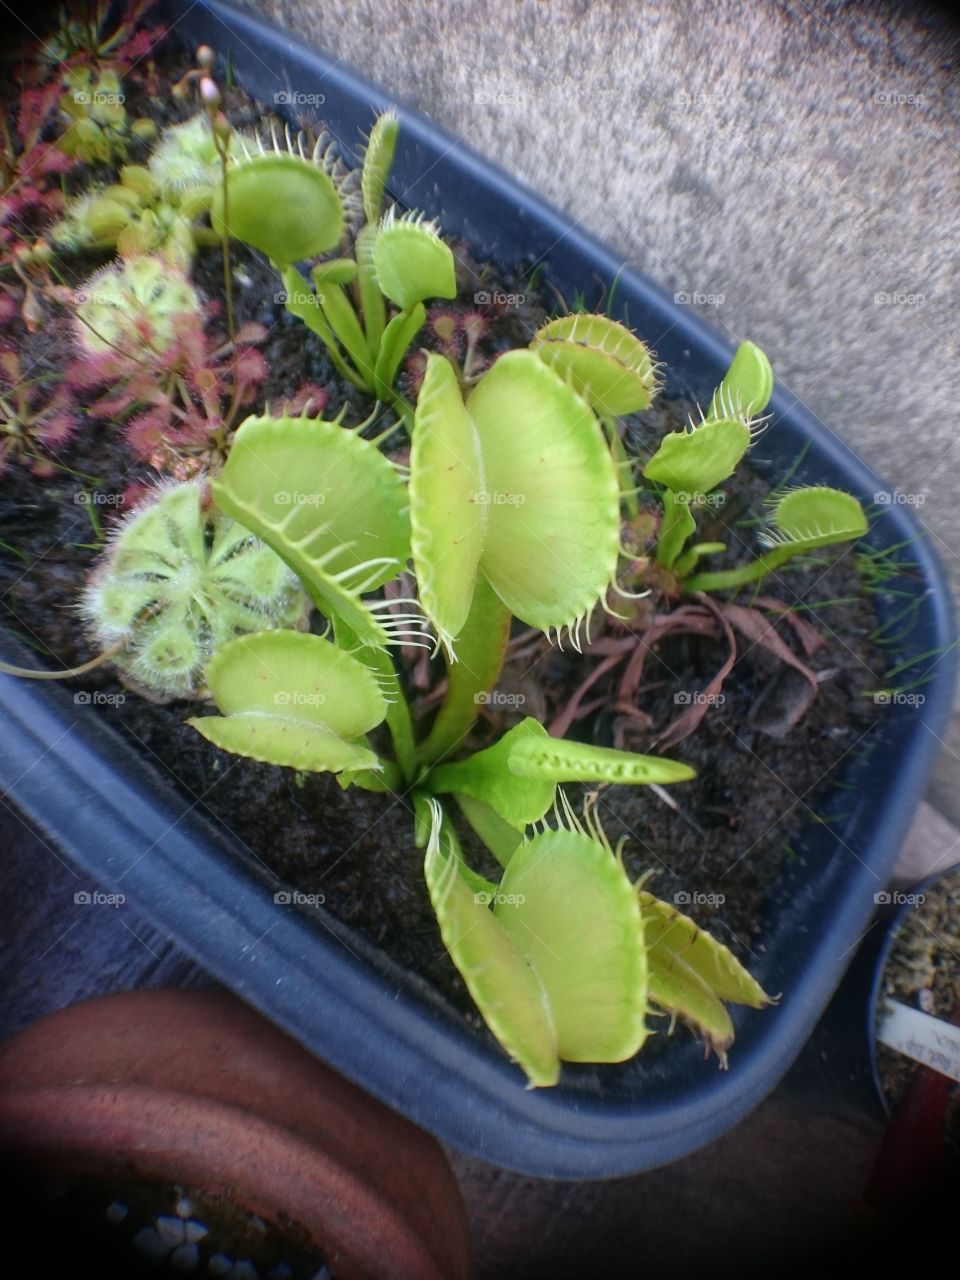 My Carnivorous Plants Dionaea Muscipula B52 😍